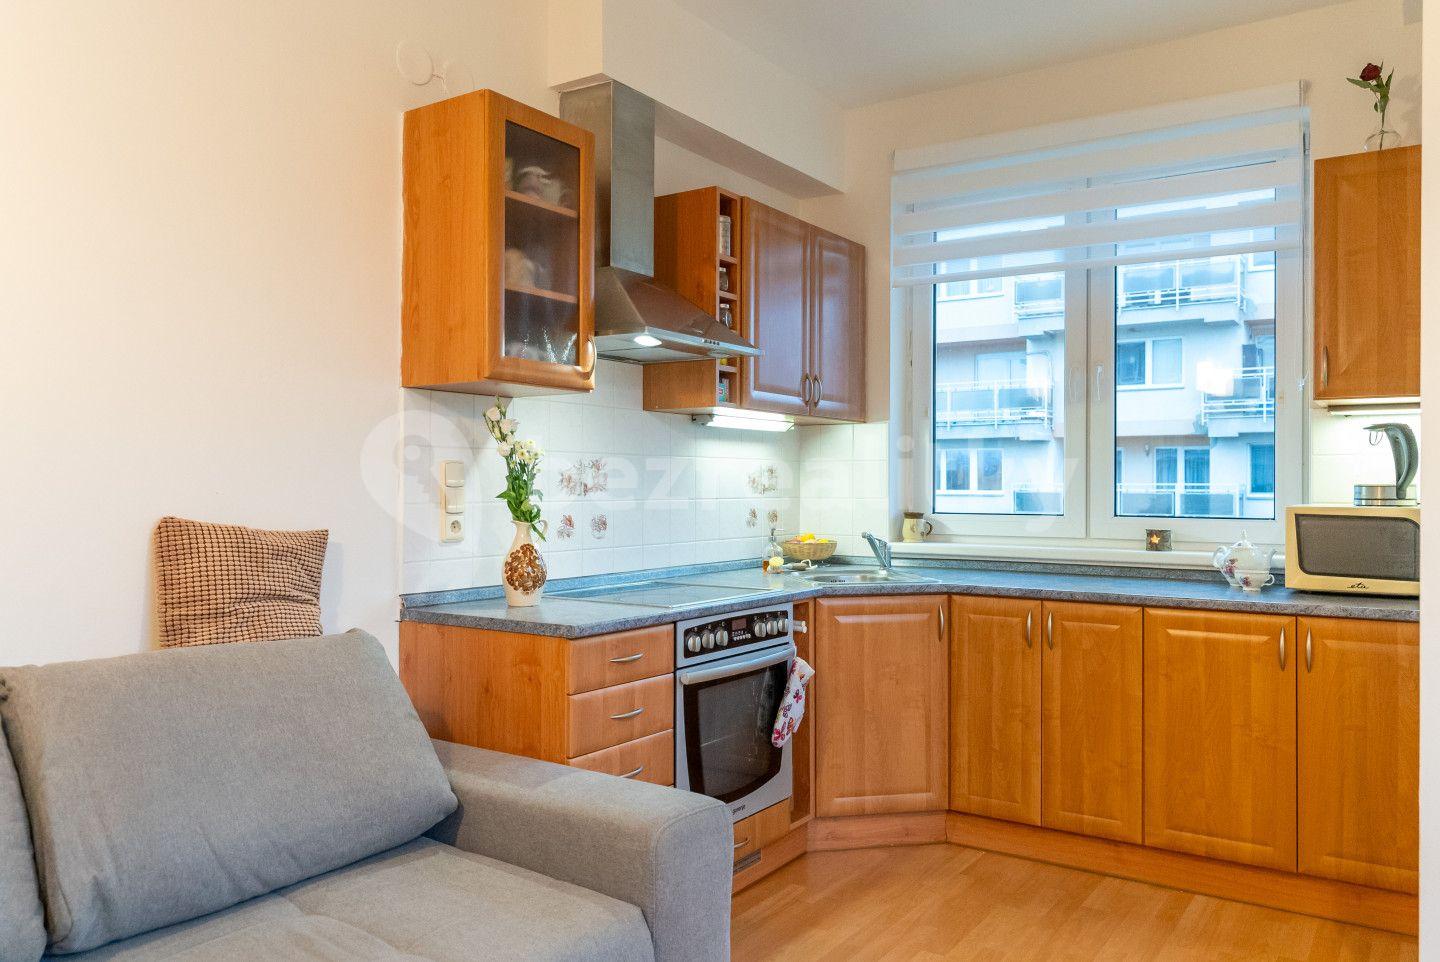 1 bedroom with open-plan kitchen flat for sale, 42 m², Handkeho, Olomouc, Olomoucký Region